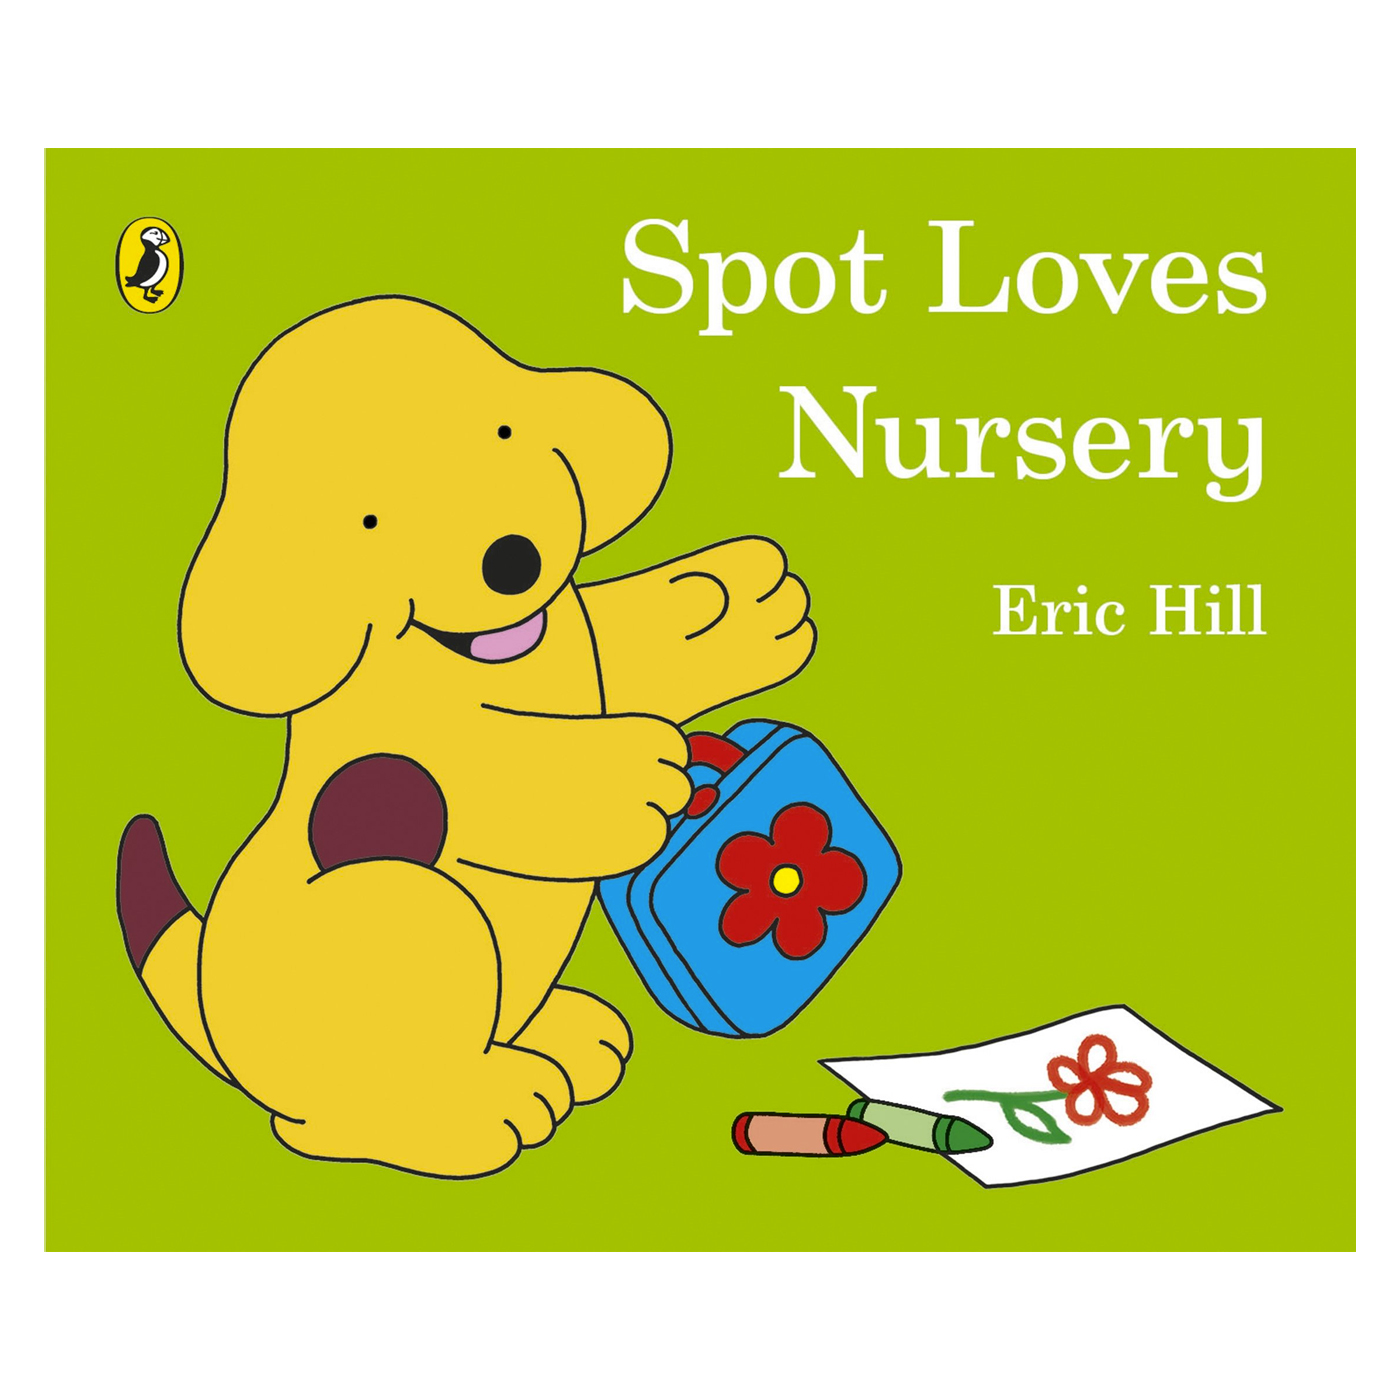  Spot Loves Nursery